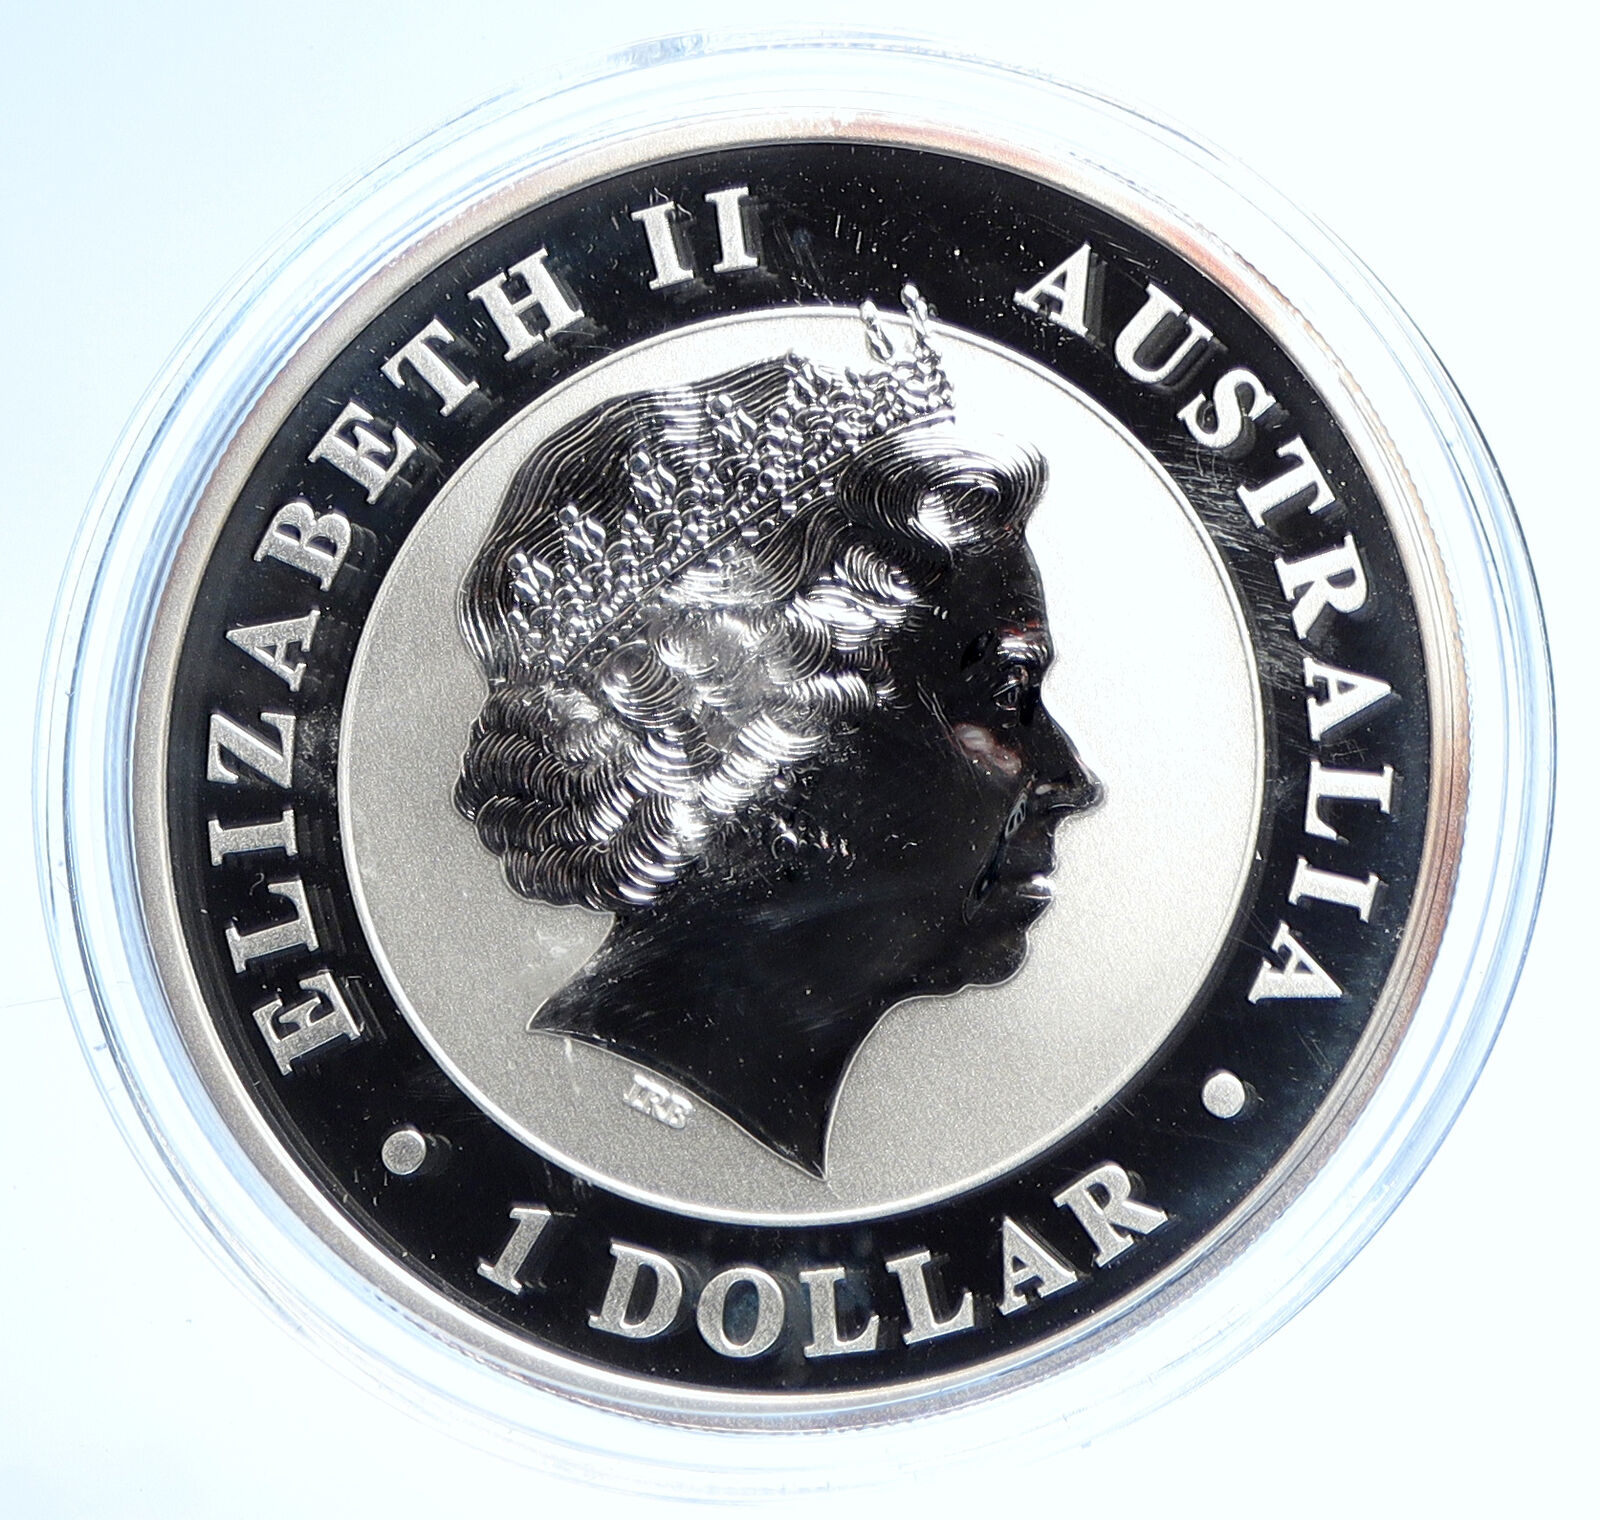 2011 AUSTRALIA Queen Elizabeth II KOALAS Antique Silver OZ Dollar Coin i107743